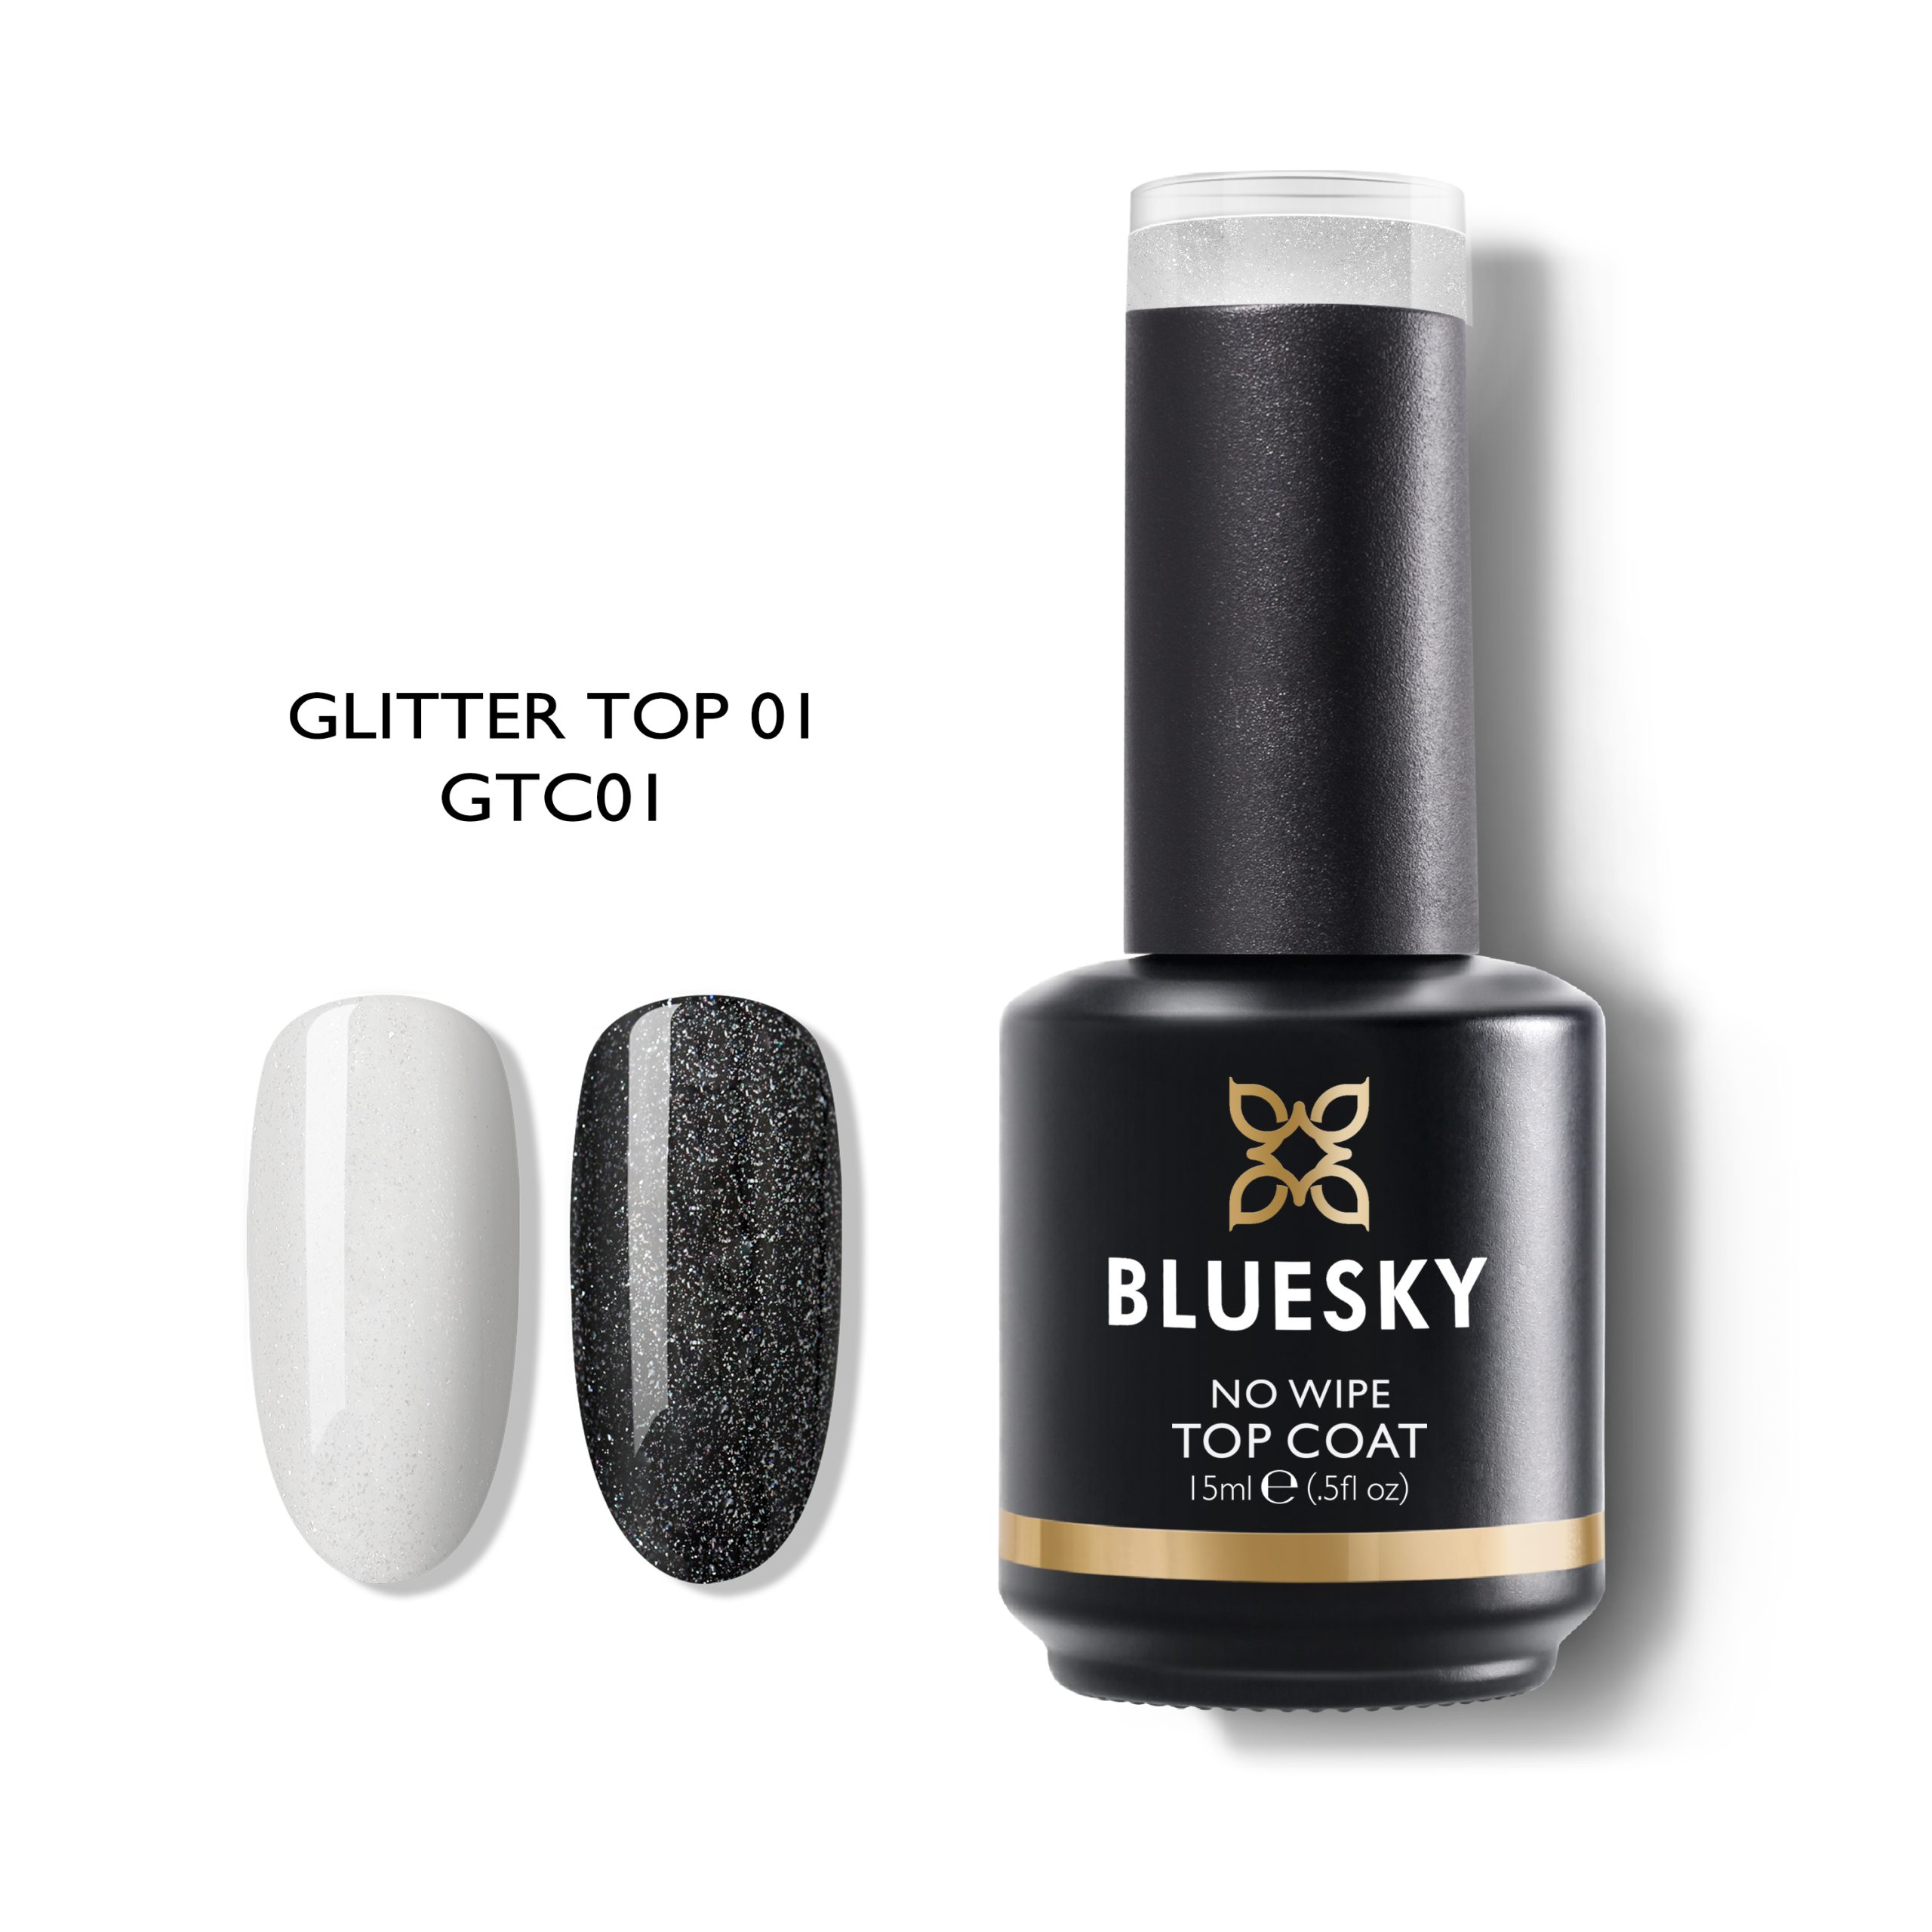 blueskygel.gr Bases & Tops Top Glitter No Wipe Coat (GTC02)